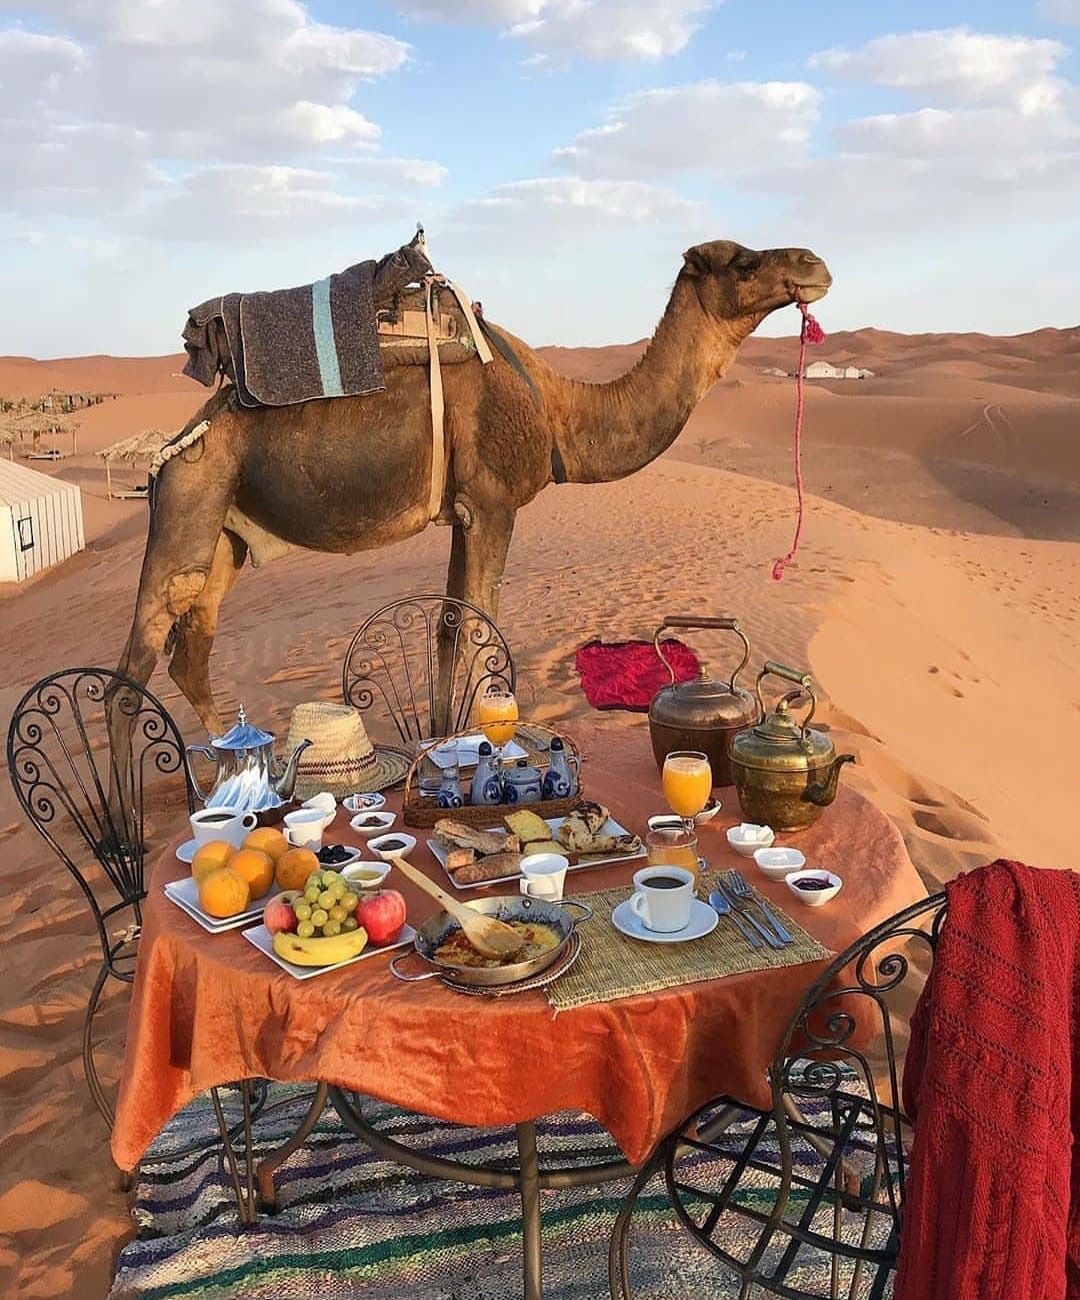 excursion-al-desierto-de-merzouga-marruecos